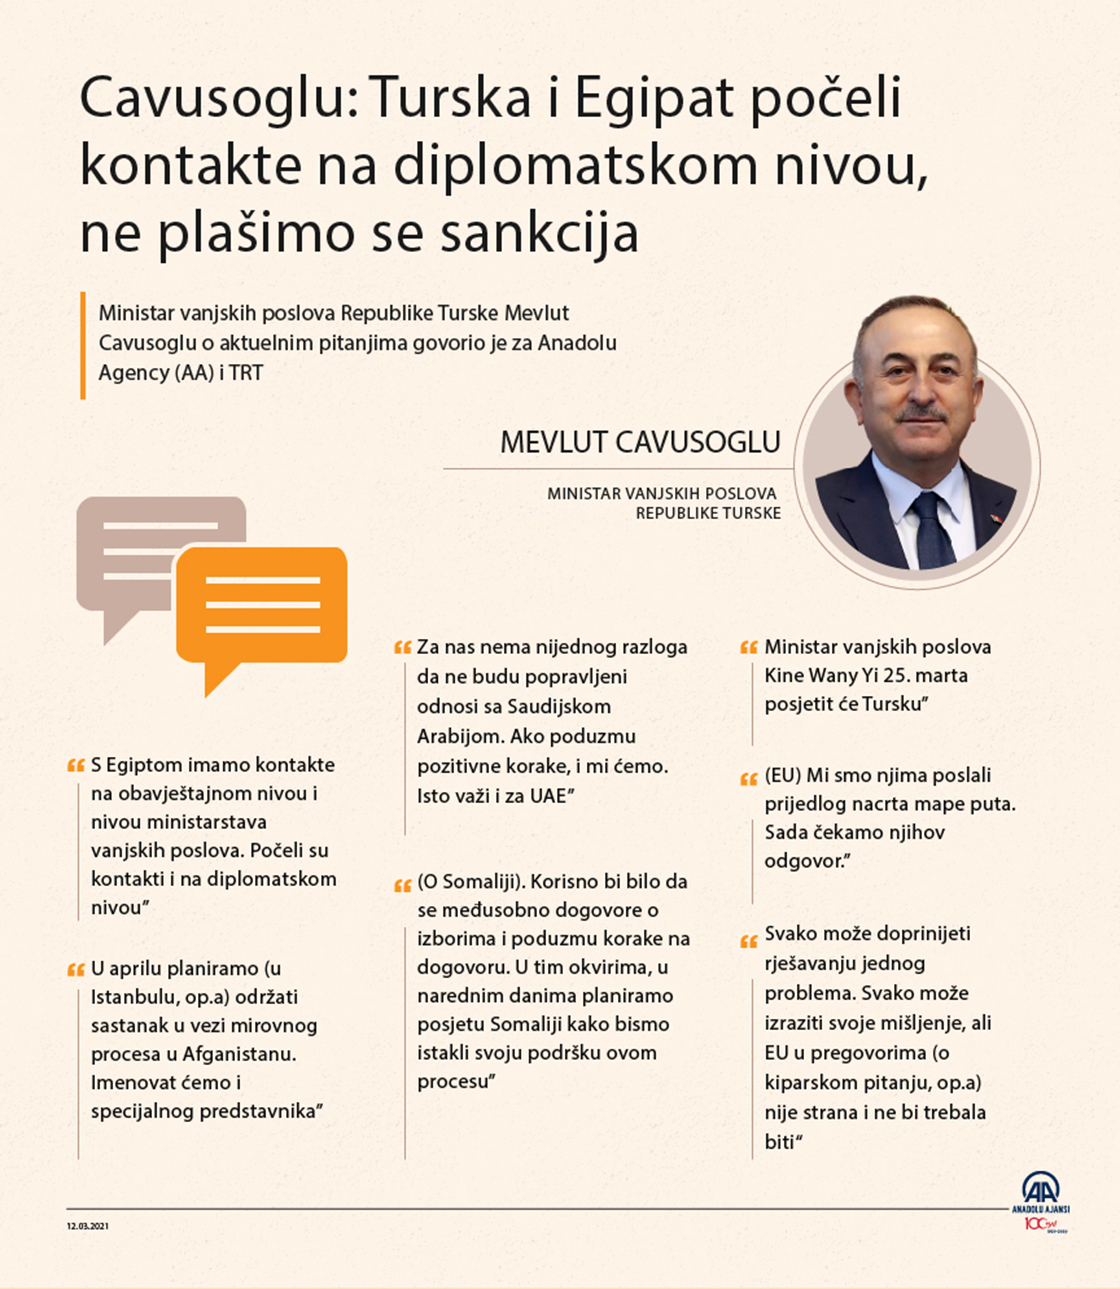 Ministar vanjskih poslova Republike Turske  Mevlut Cavusoglu u razgovoru za Anadolu Agency (AA) i TRT